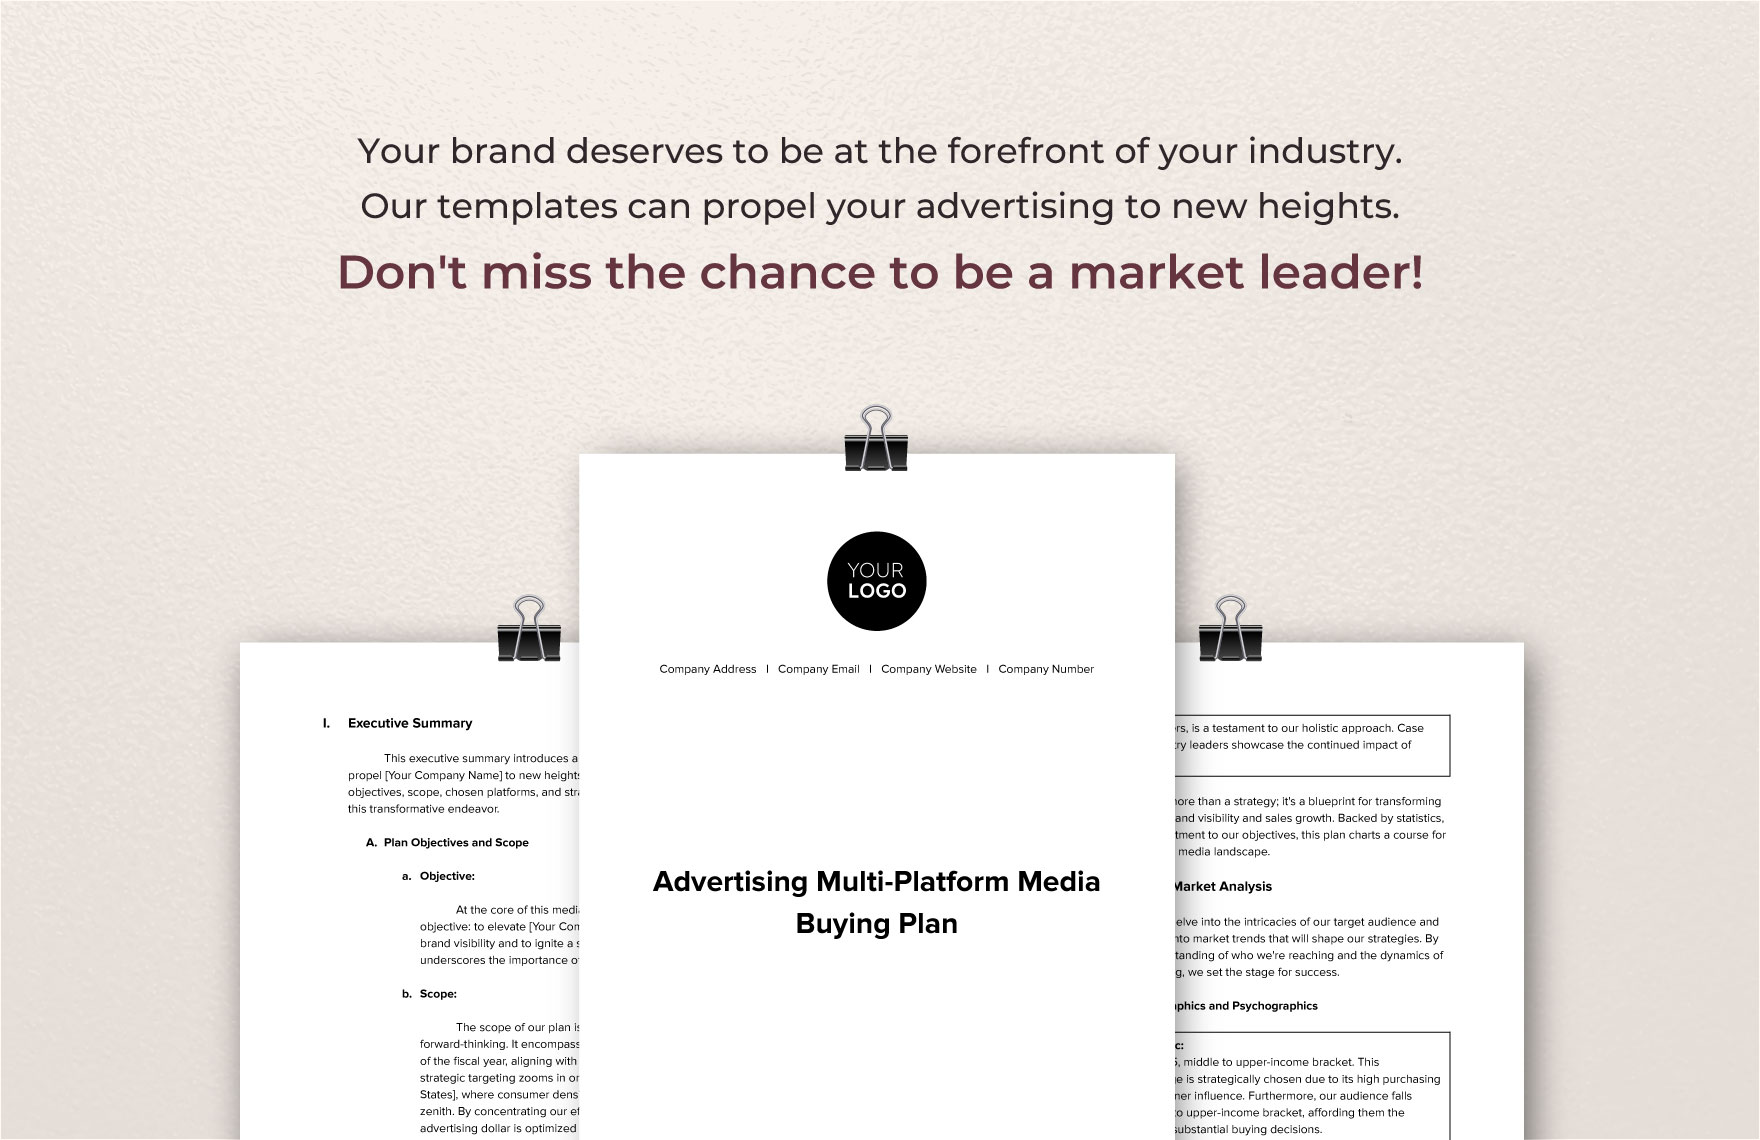 Advertising Multi-Platform Media Buying Plan Template